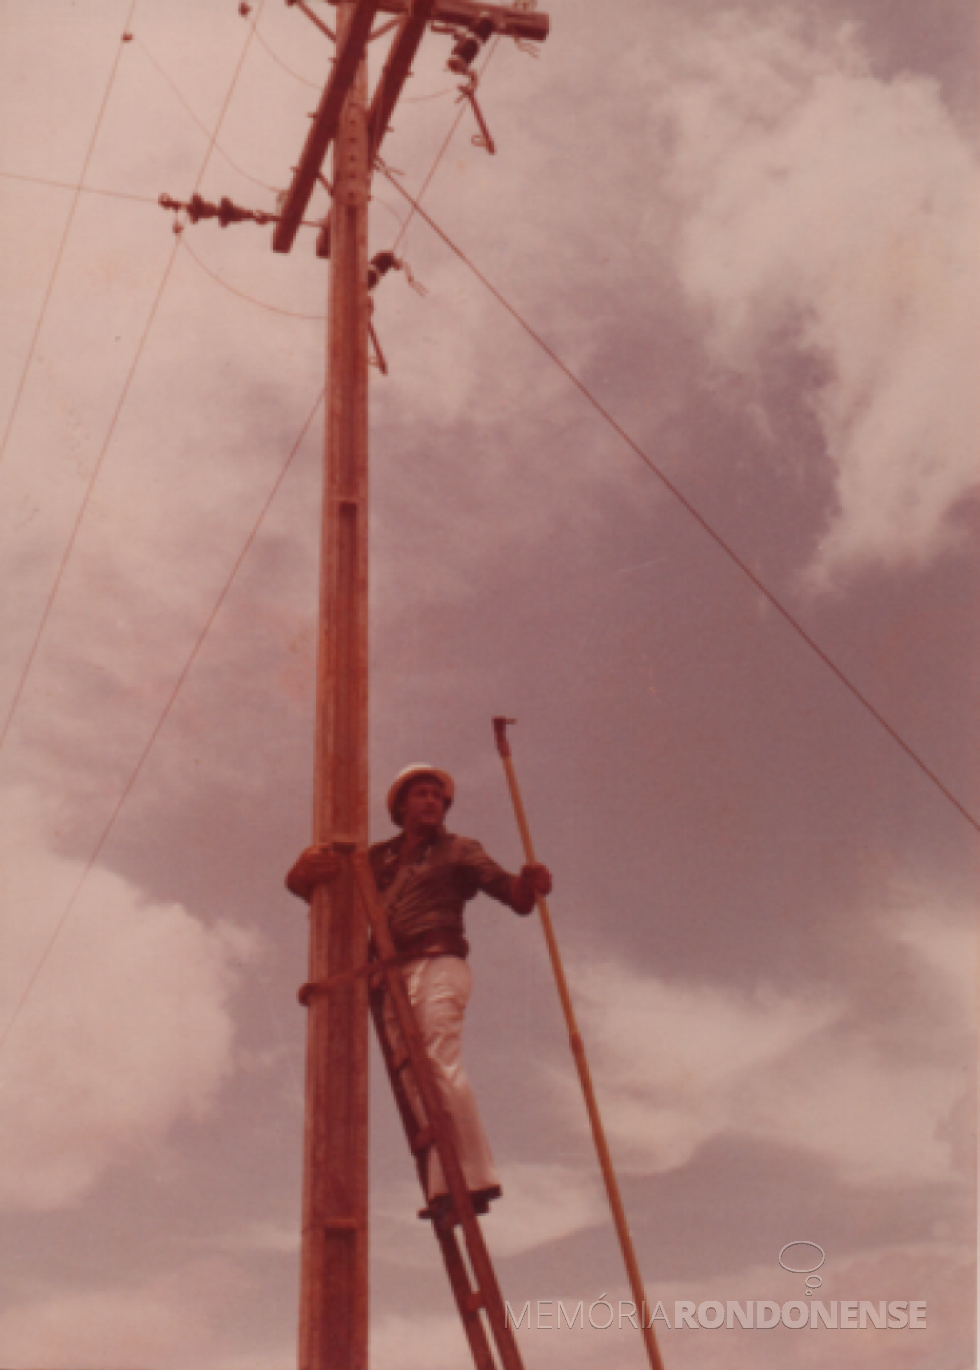 || Vereador Ariovaldo Luiz Bier acionando as chaves para fornecimento de energia elétrica para entidade de Esquina Bandeirantes, no distrito rondonense de Novo Três Passos, em novembro de 1978.
Imagem: Acervo família Bier - FOTO 8 - 